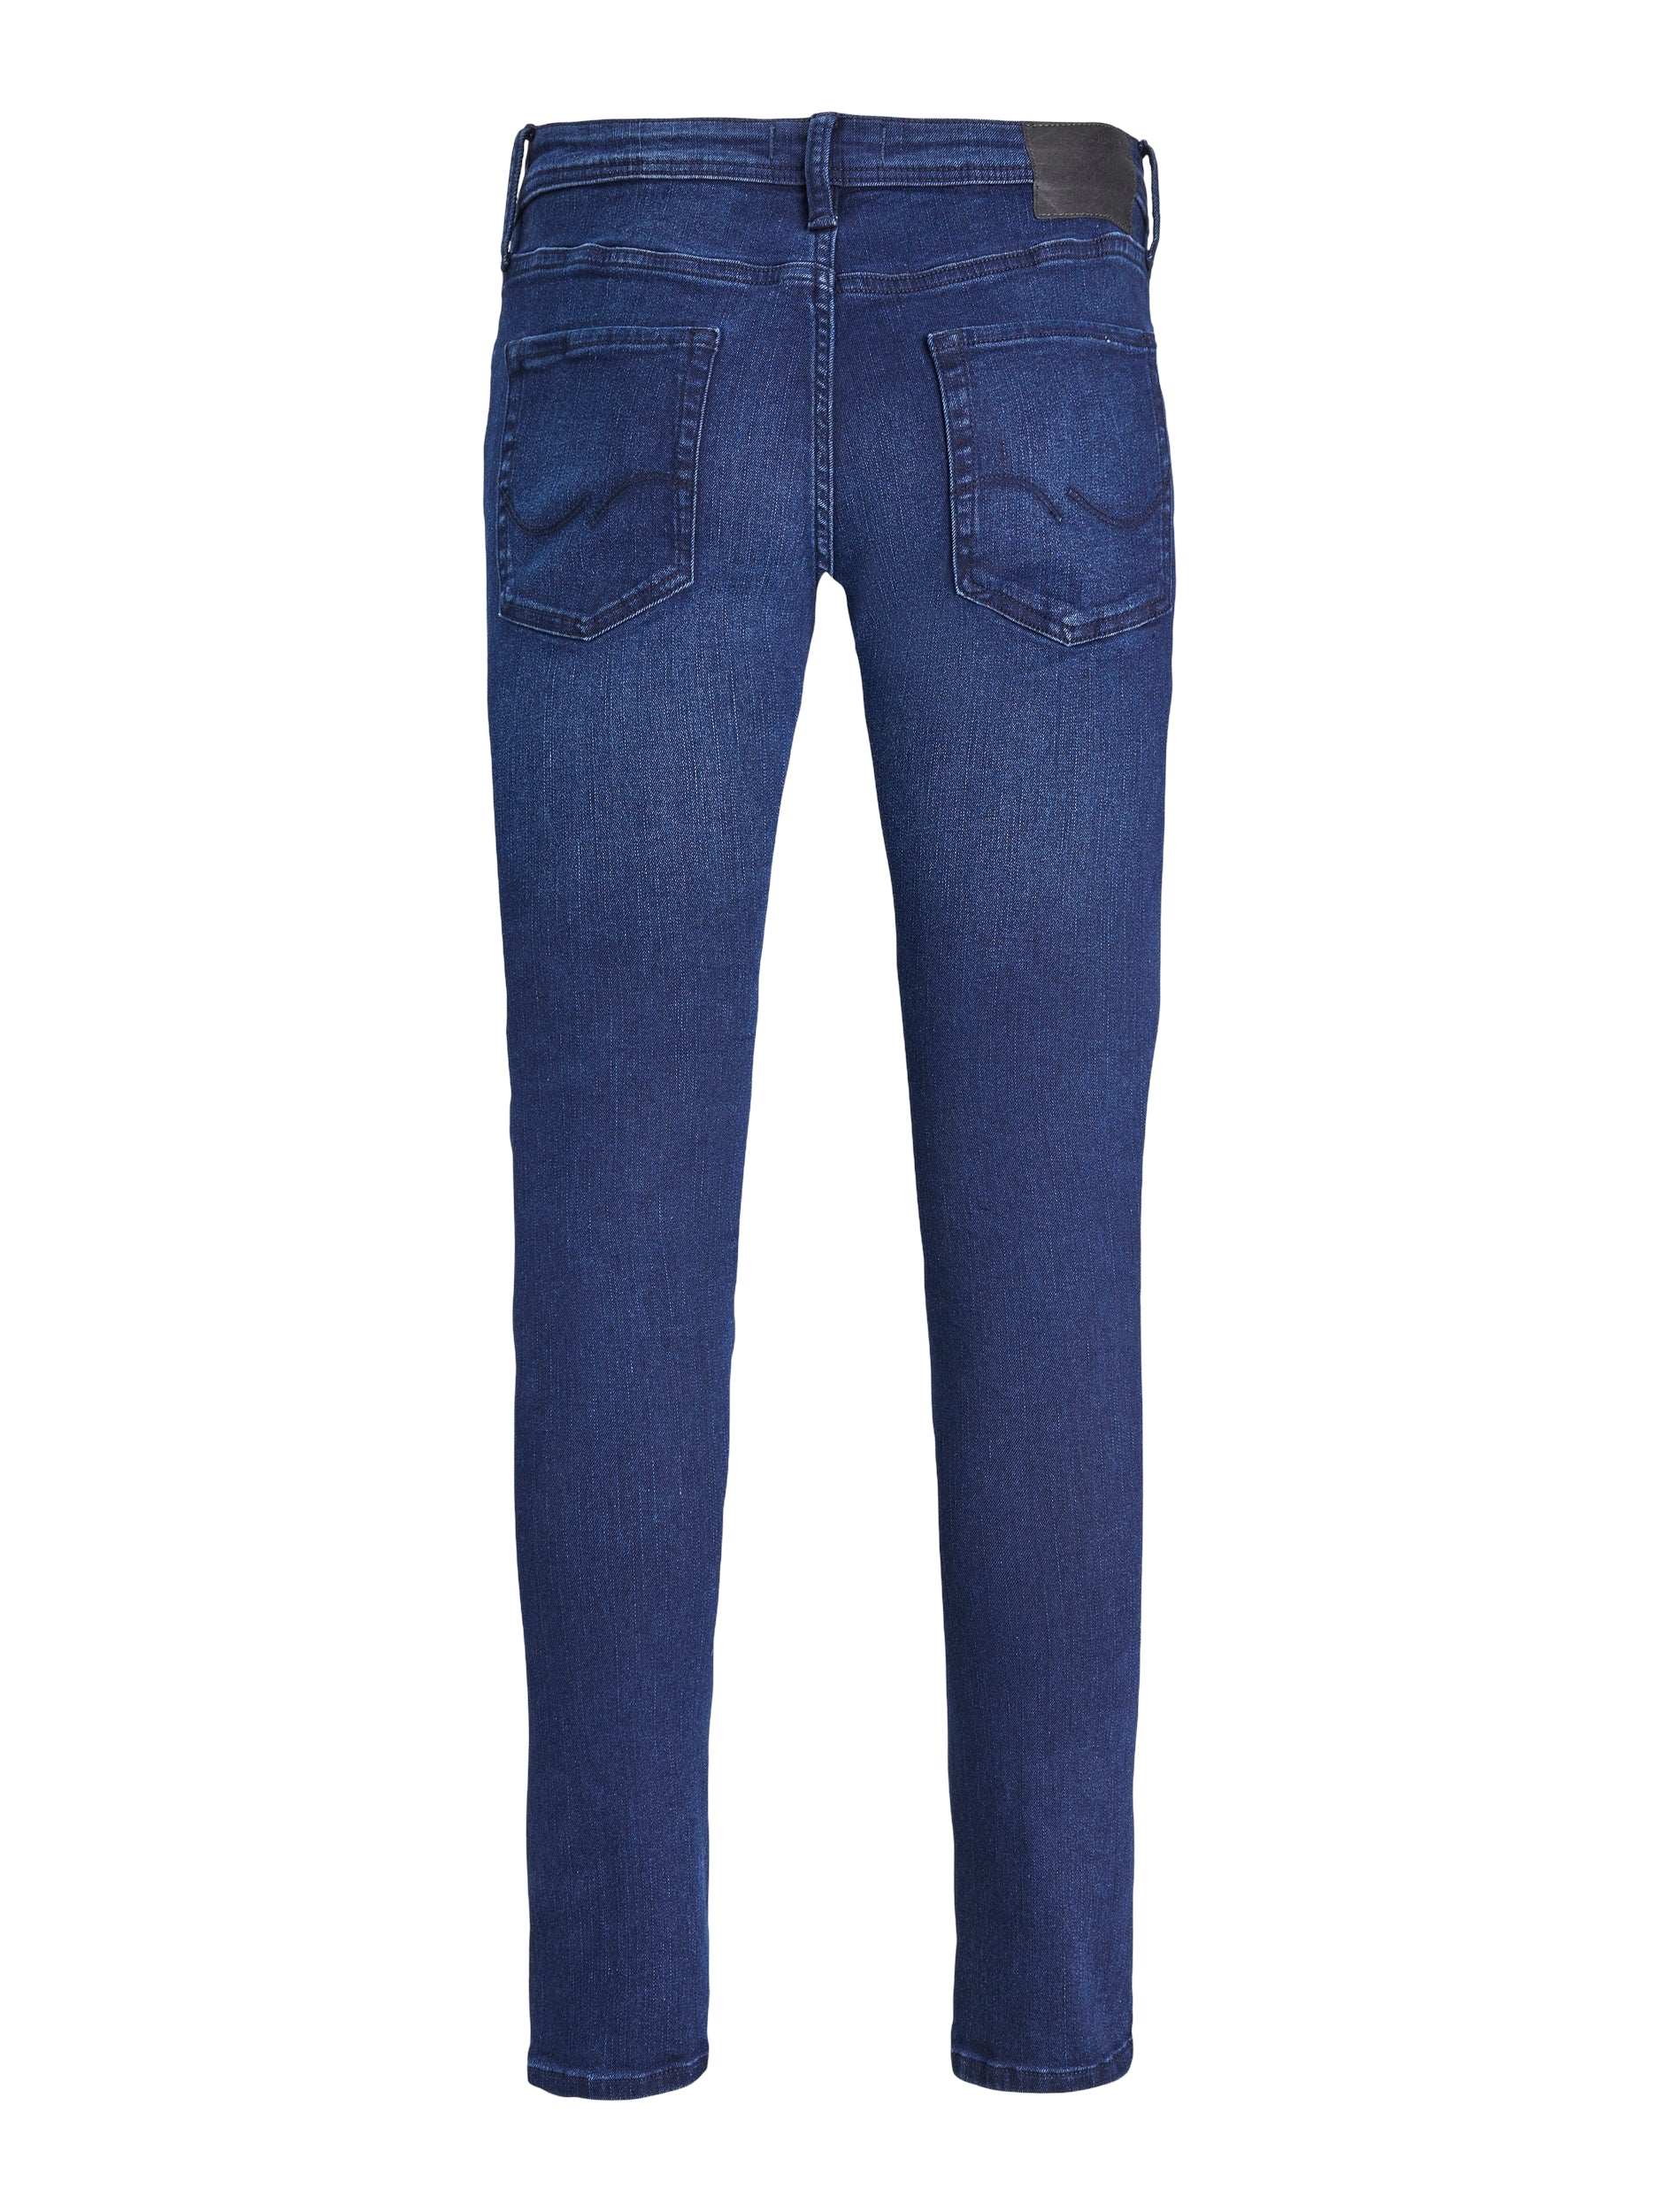 Jack & Jones Glenn Original 775 Slim Fit Jeans Blue - Raw Menswear